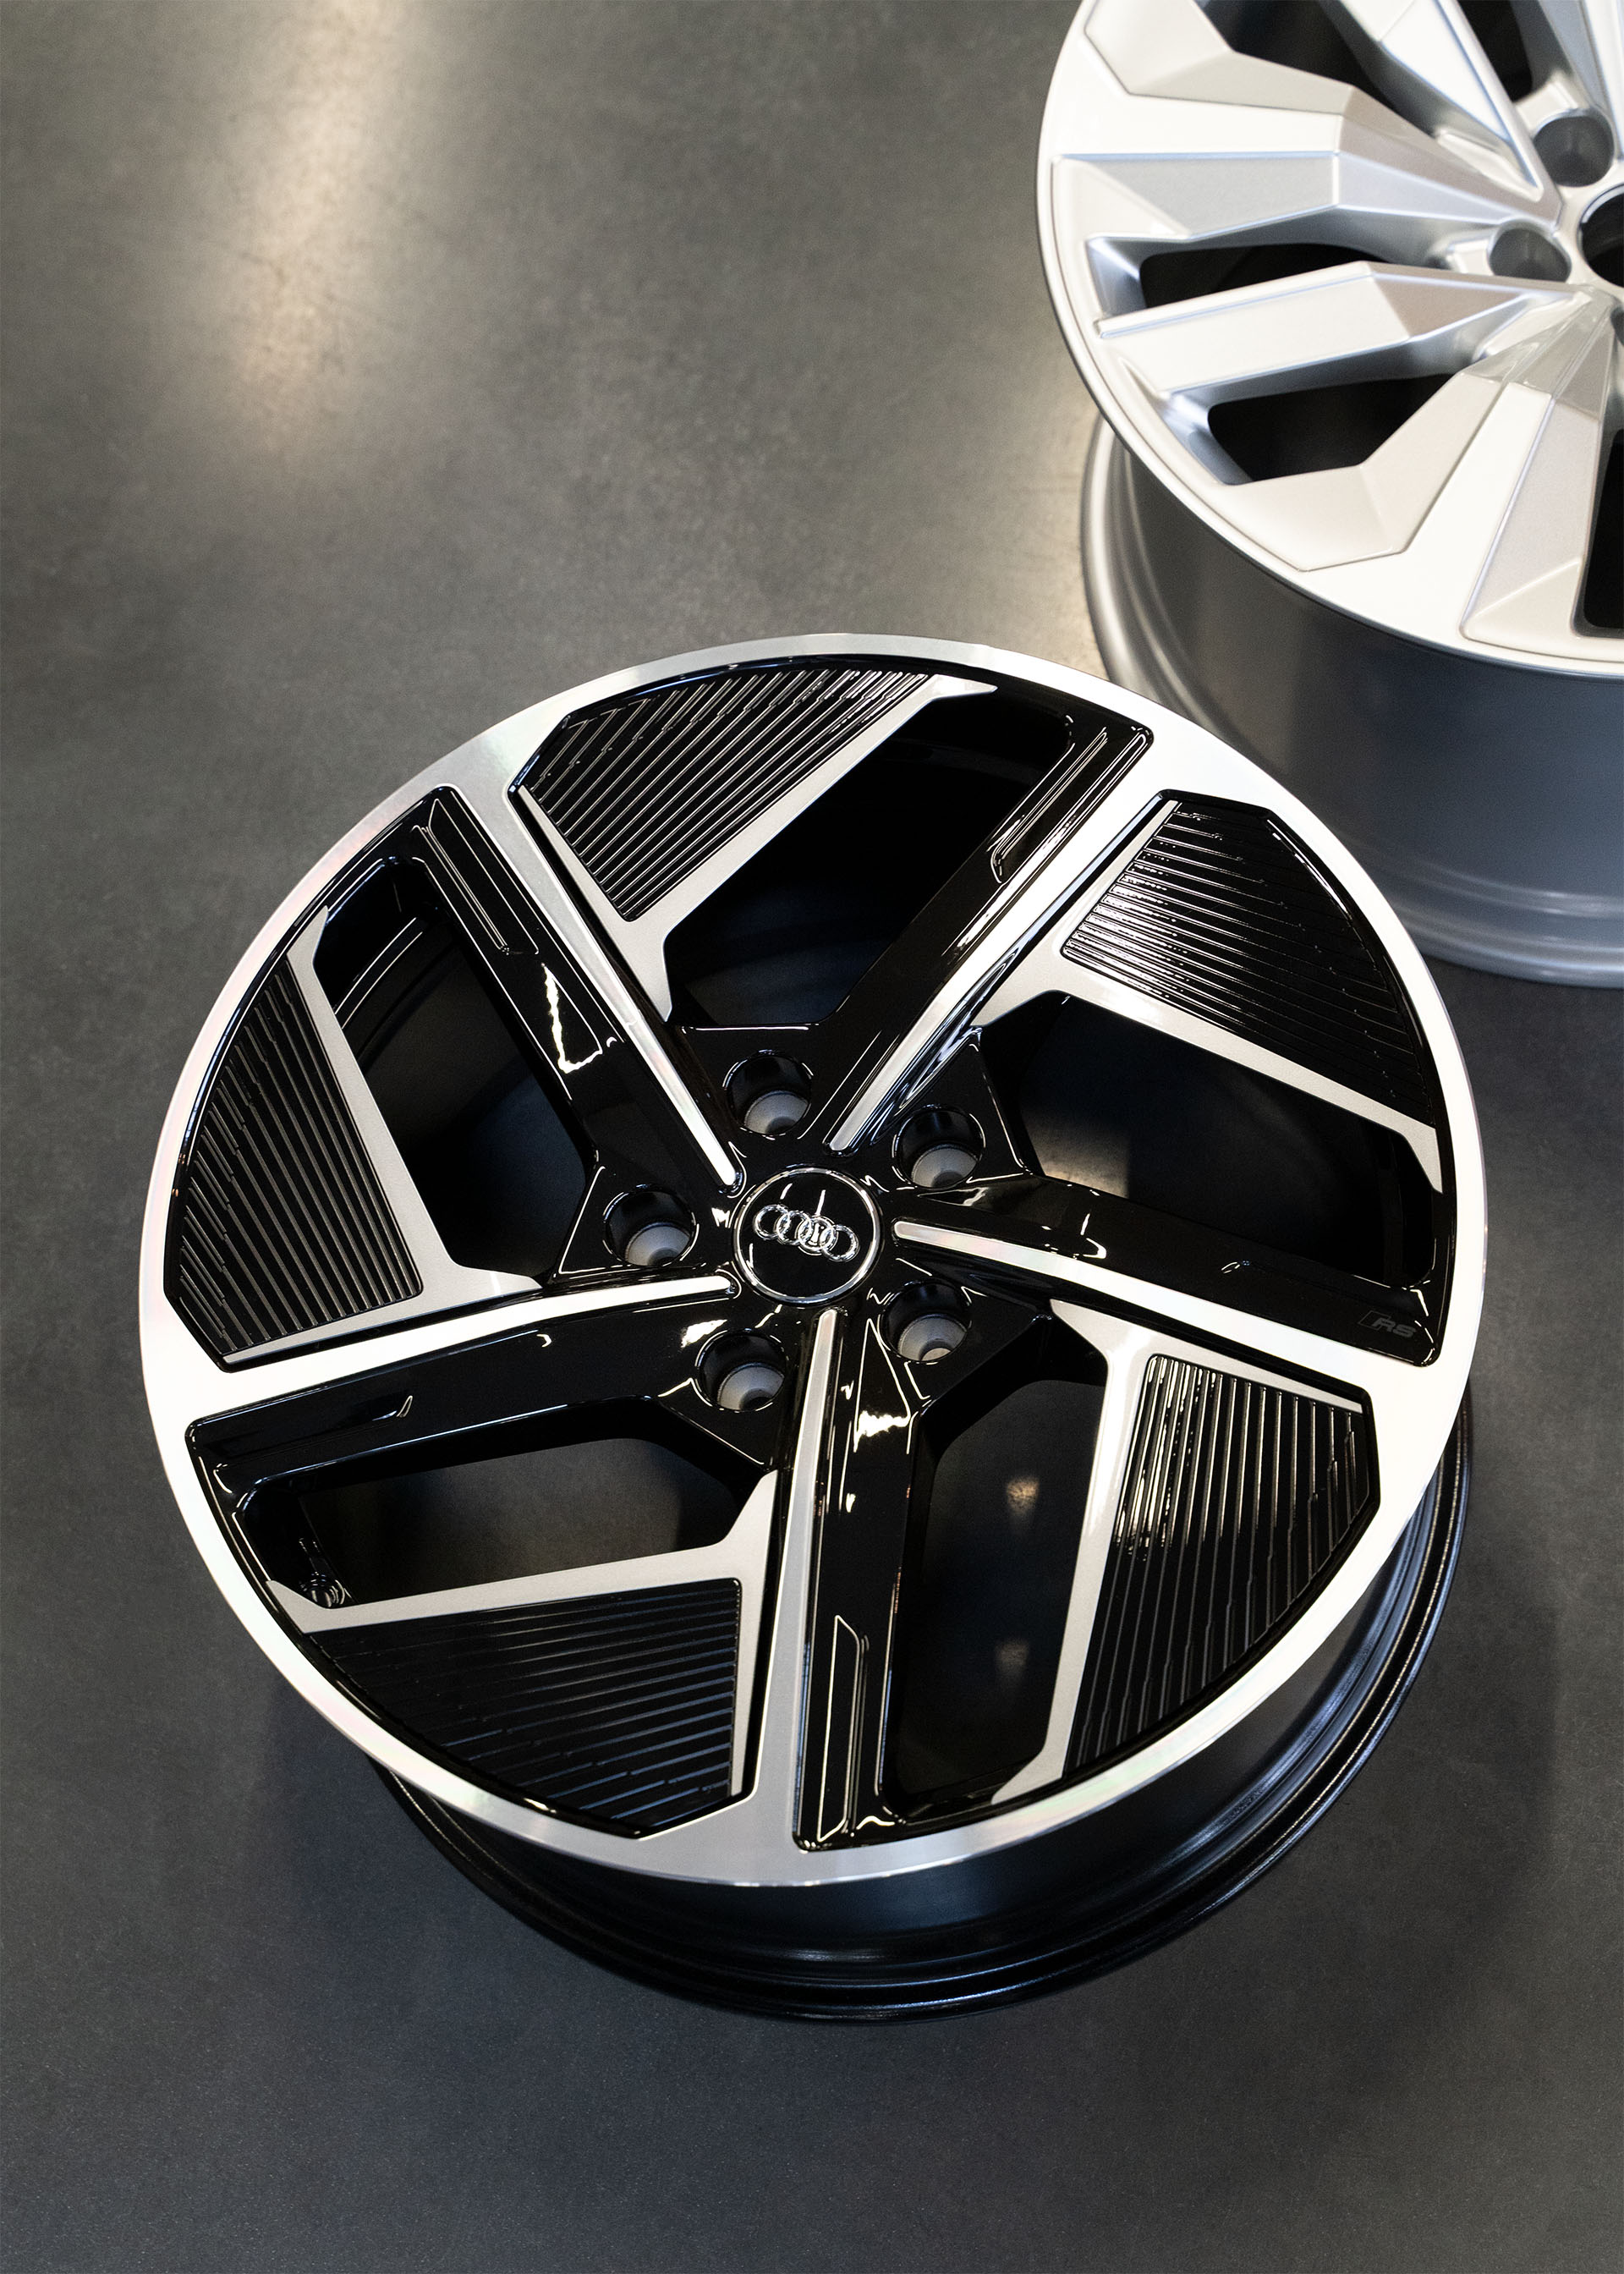 Foto de la rueda aerodinámica multicolor del Audi e-tron GT quattro.